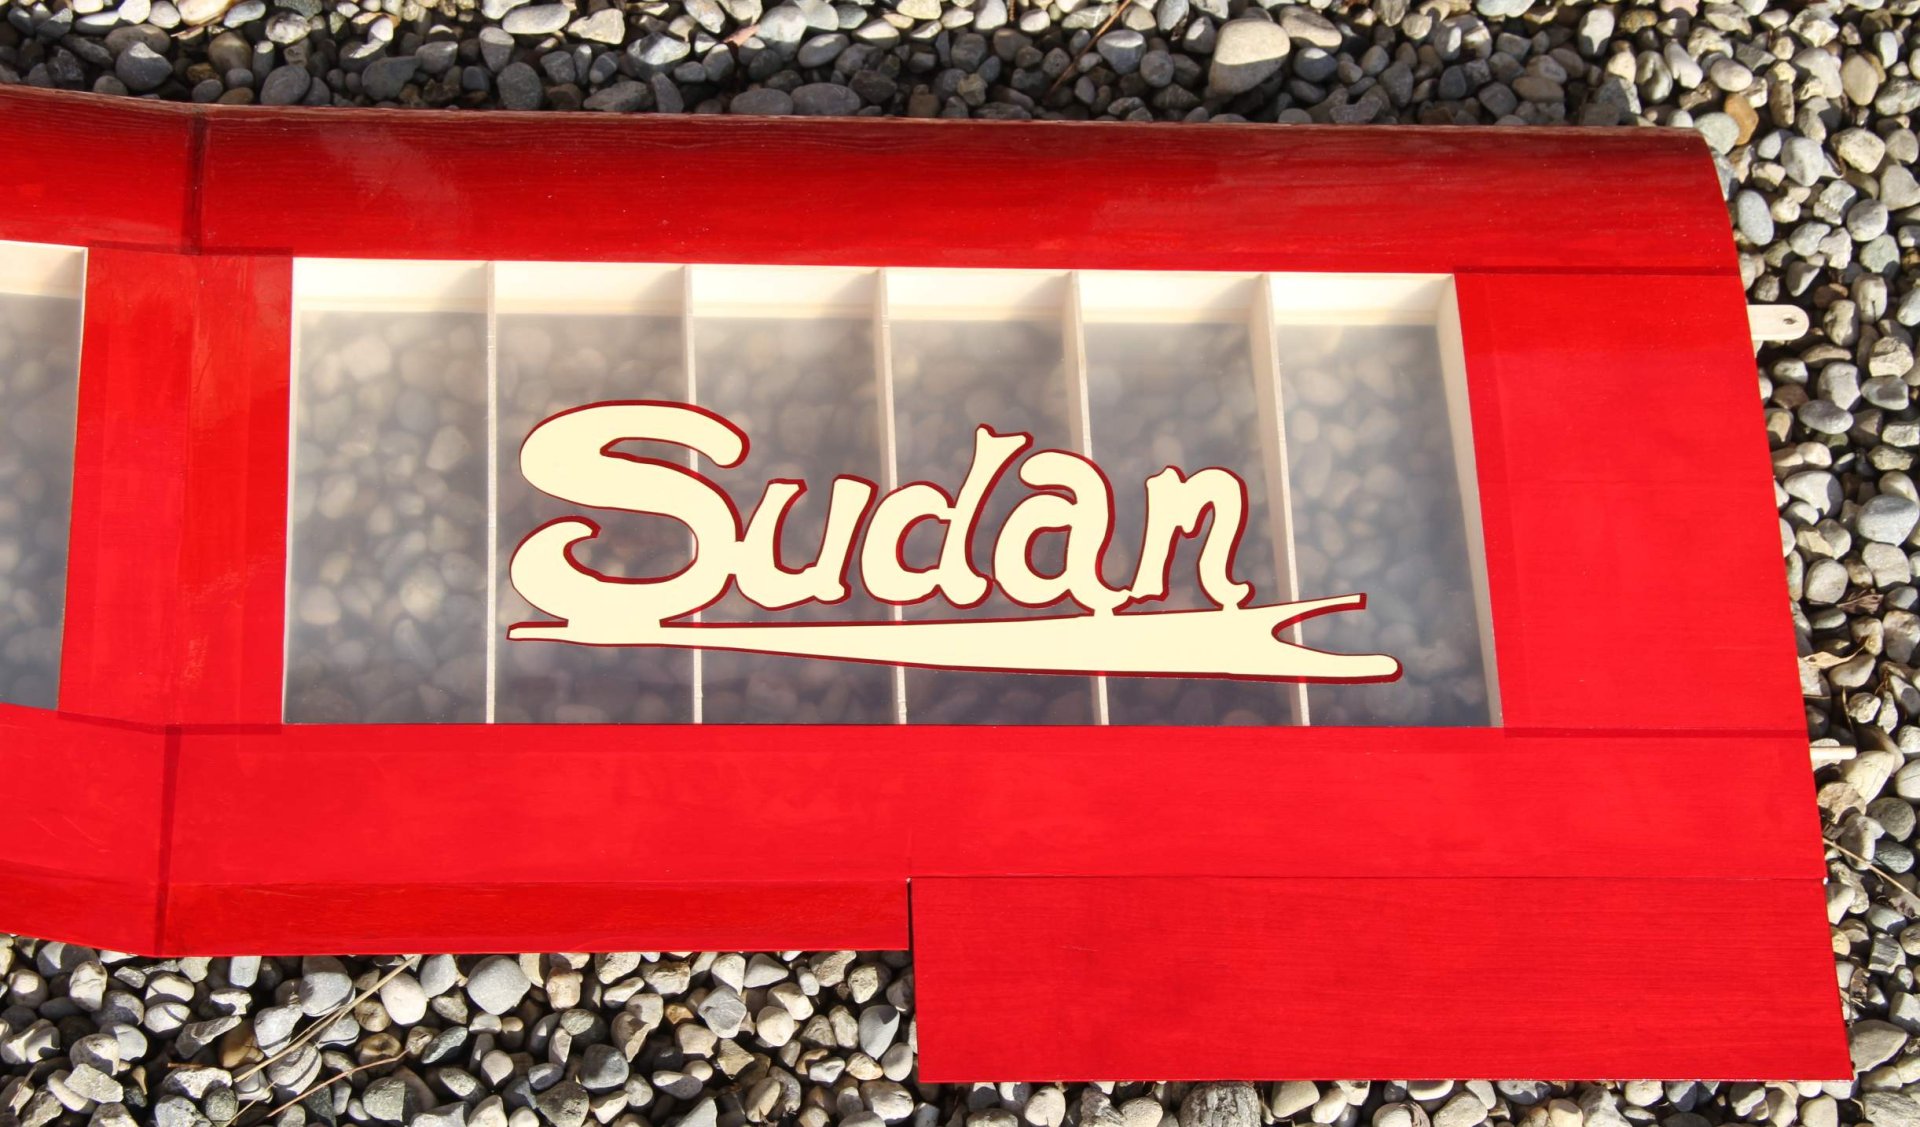 SUDAN SCHRIFTZUG.jpg